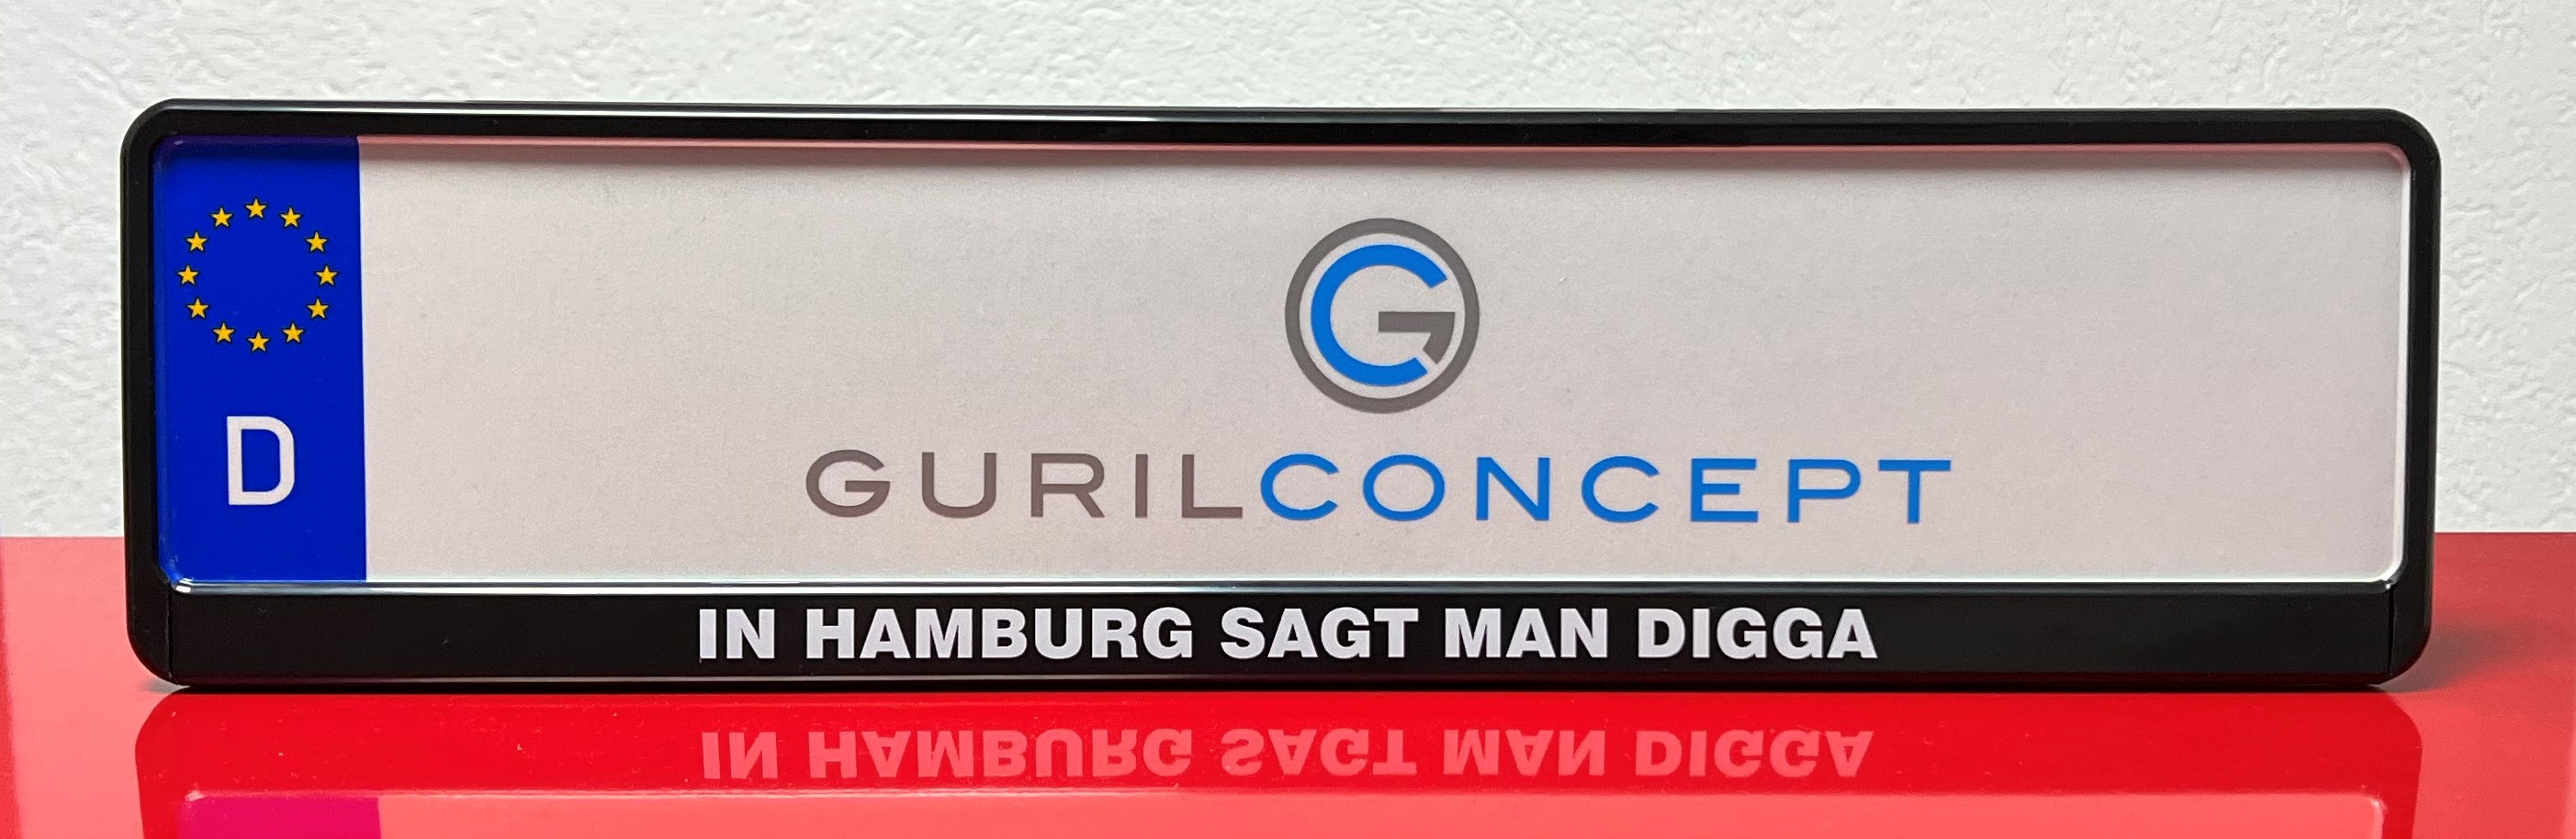 In Hamburg sagt man Digga - personalisierter Kennzeichenhalter von GurilConcept Werbetechnik